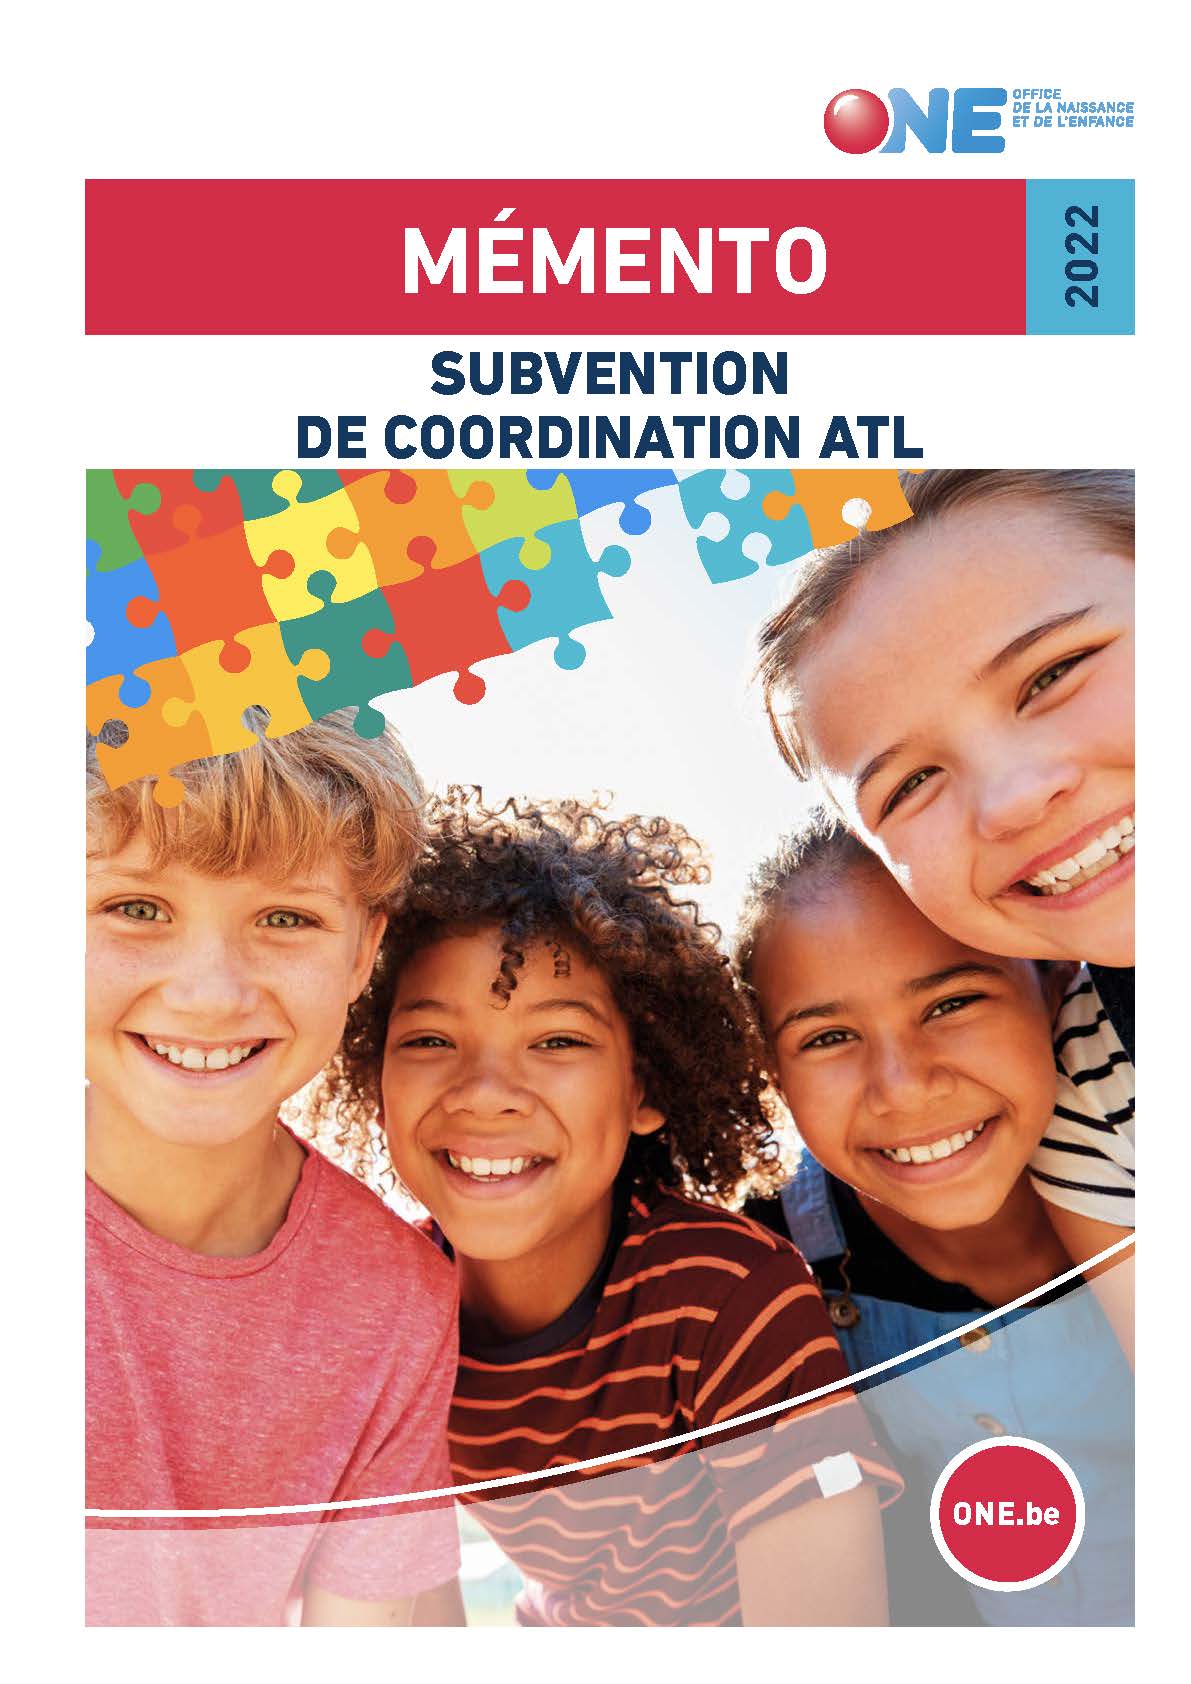 Téléchargez notre brochure Mémento – Subvention de coordination ATL (pdf)